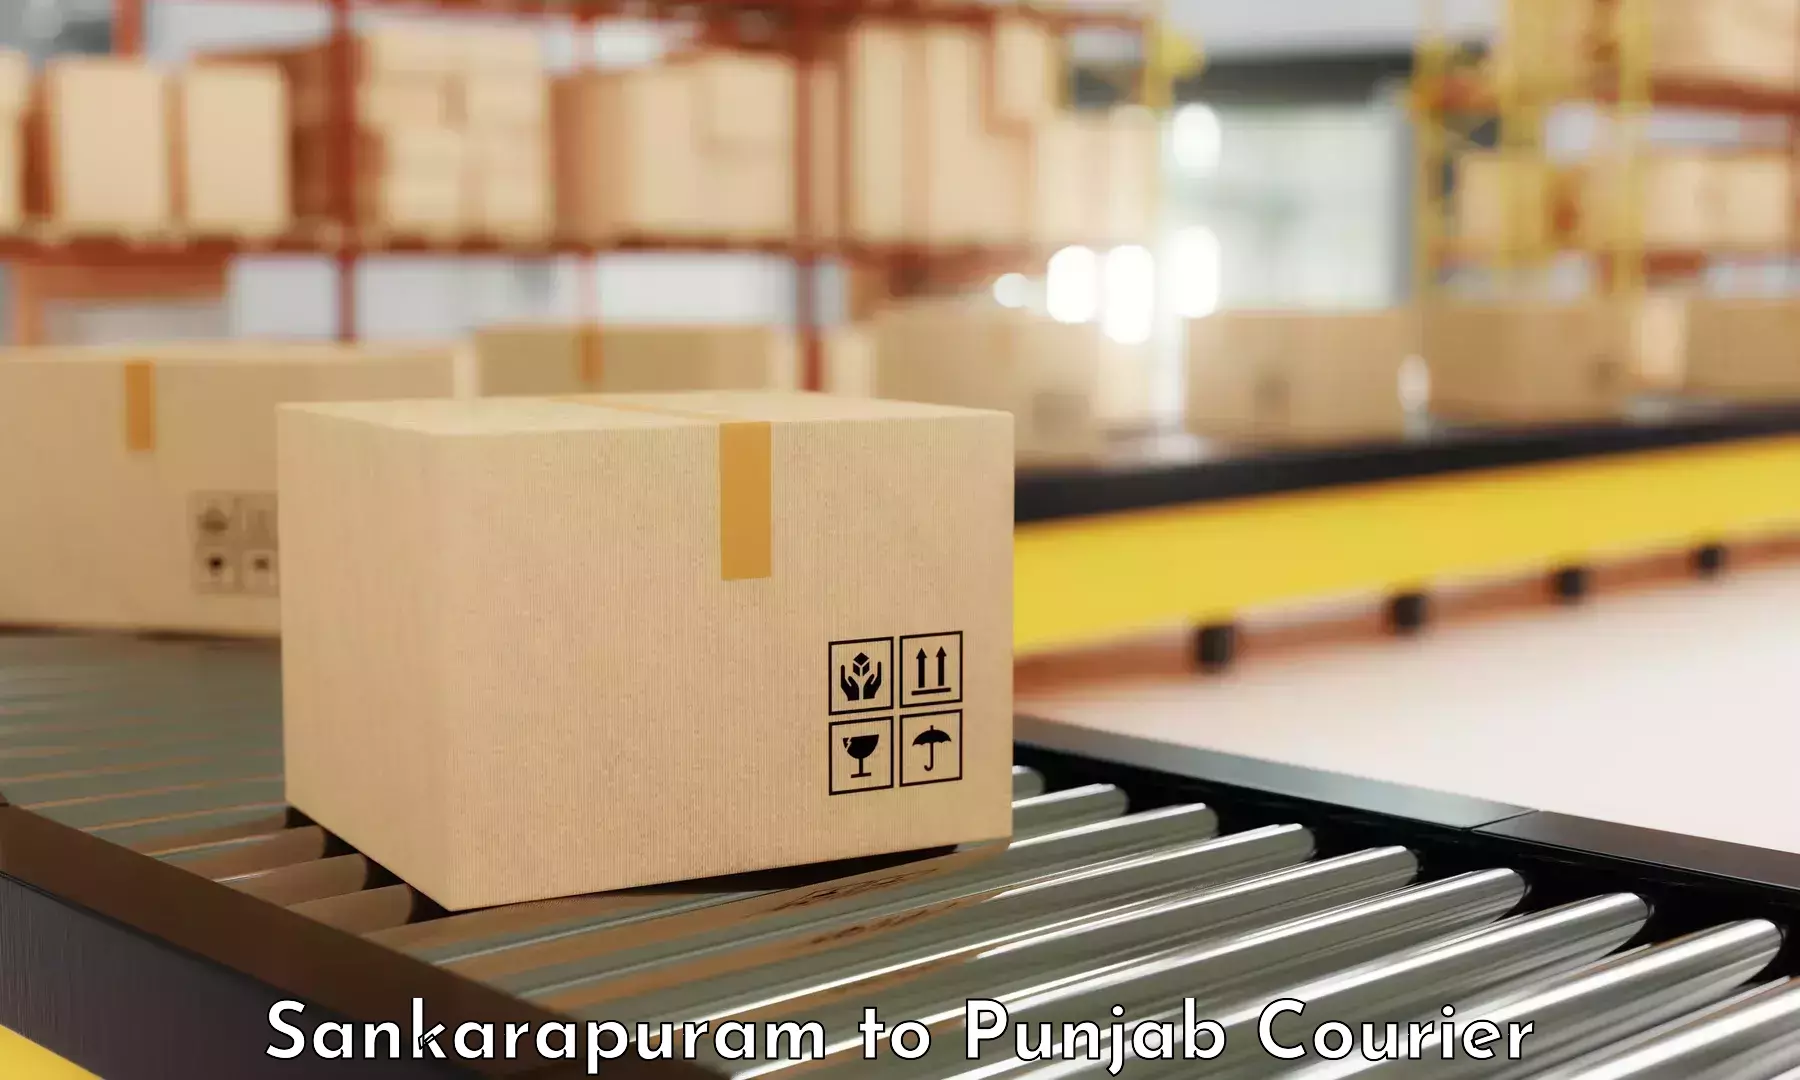 High-capacity parcel service Sankarapuram to Punjab